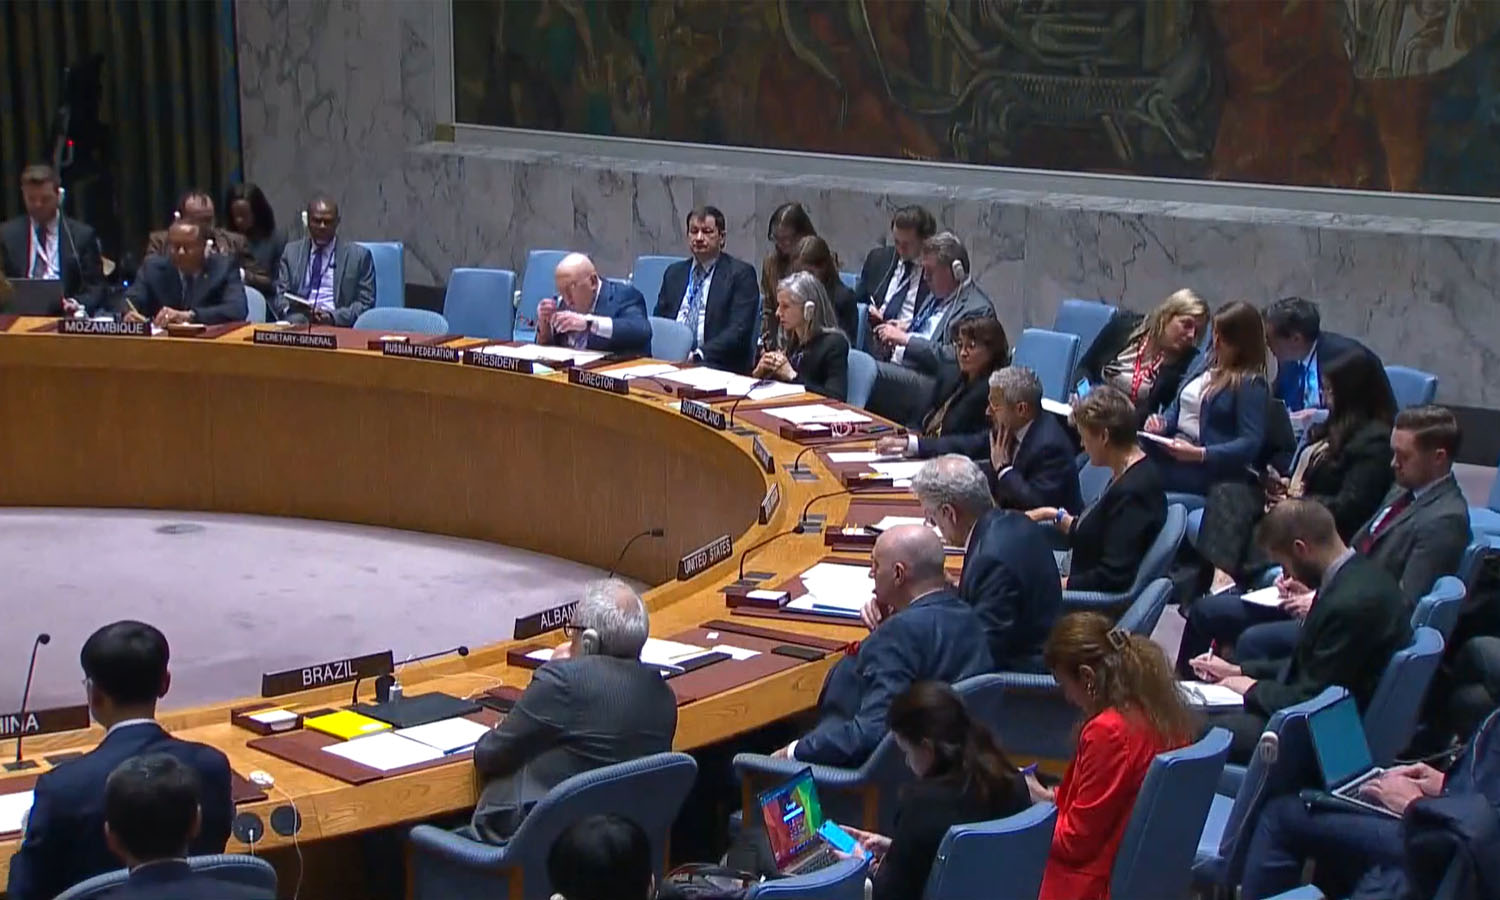 camera iconمن اجتماع مجلس الأمن حول الأوضاع في الشرق الأوسط- 27 نيسان 2023 (مجلس الأمن/ لقطة شاشة)